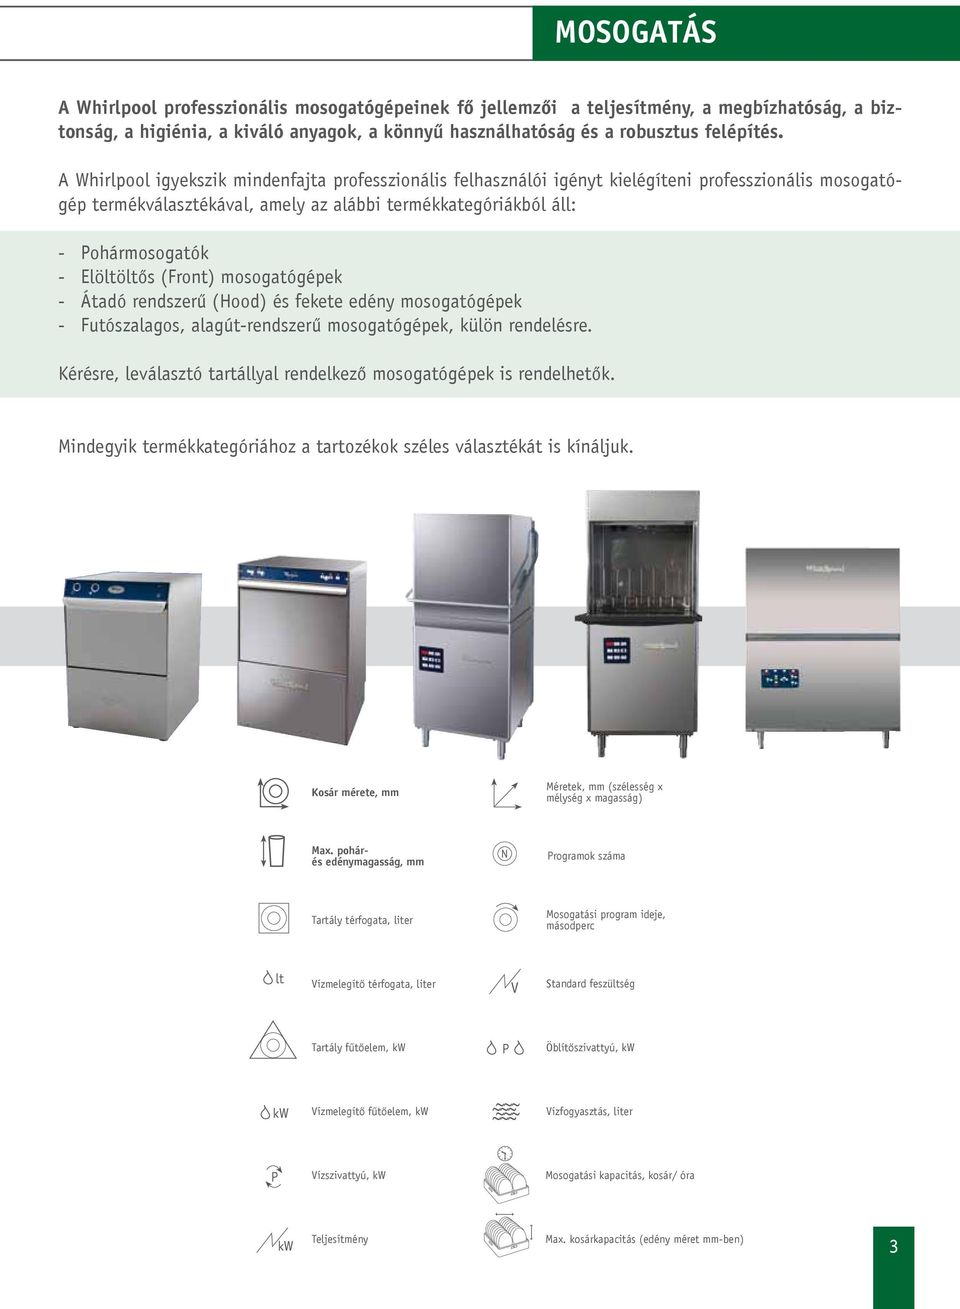 Elöltöltős (Front) mosogatógépek - Átadó rendszerű (Hood) és fekete edény mosogatógépek - Futószalagos, alagút-rendszerű mosogatógépek, külön rendelésre.